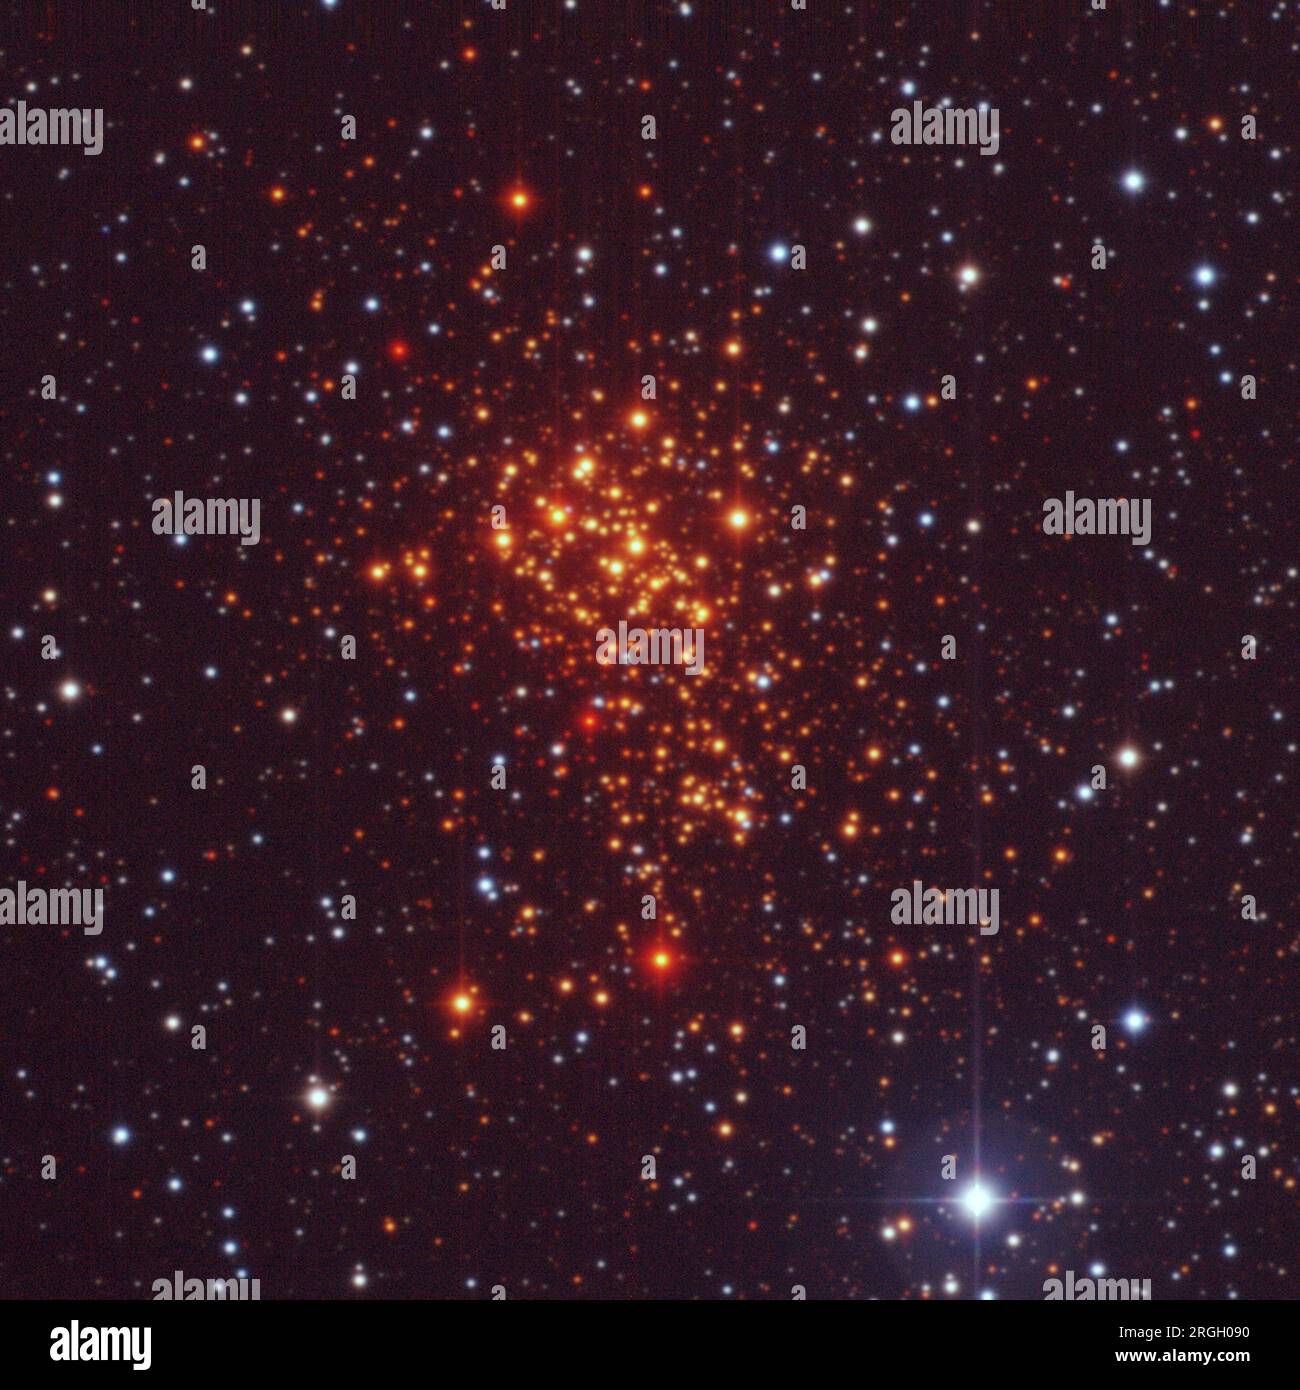 La sper star cluster Westerlund 1 Foto Stock